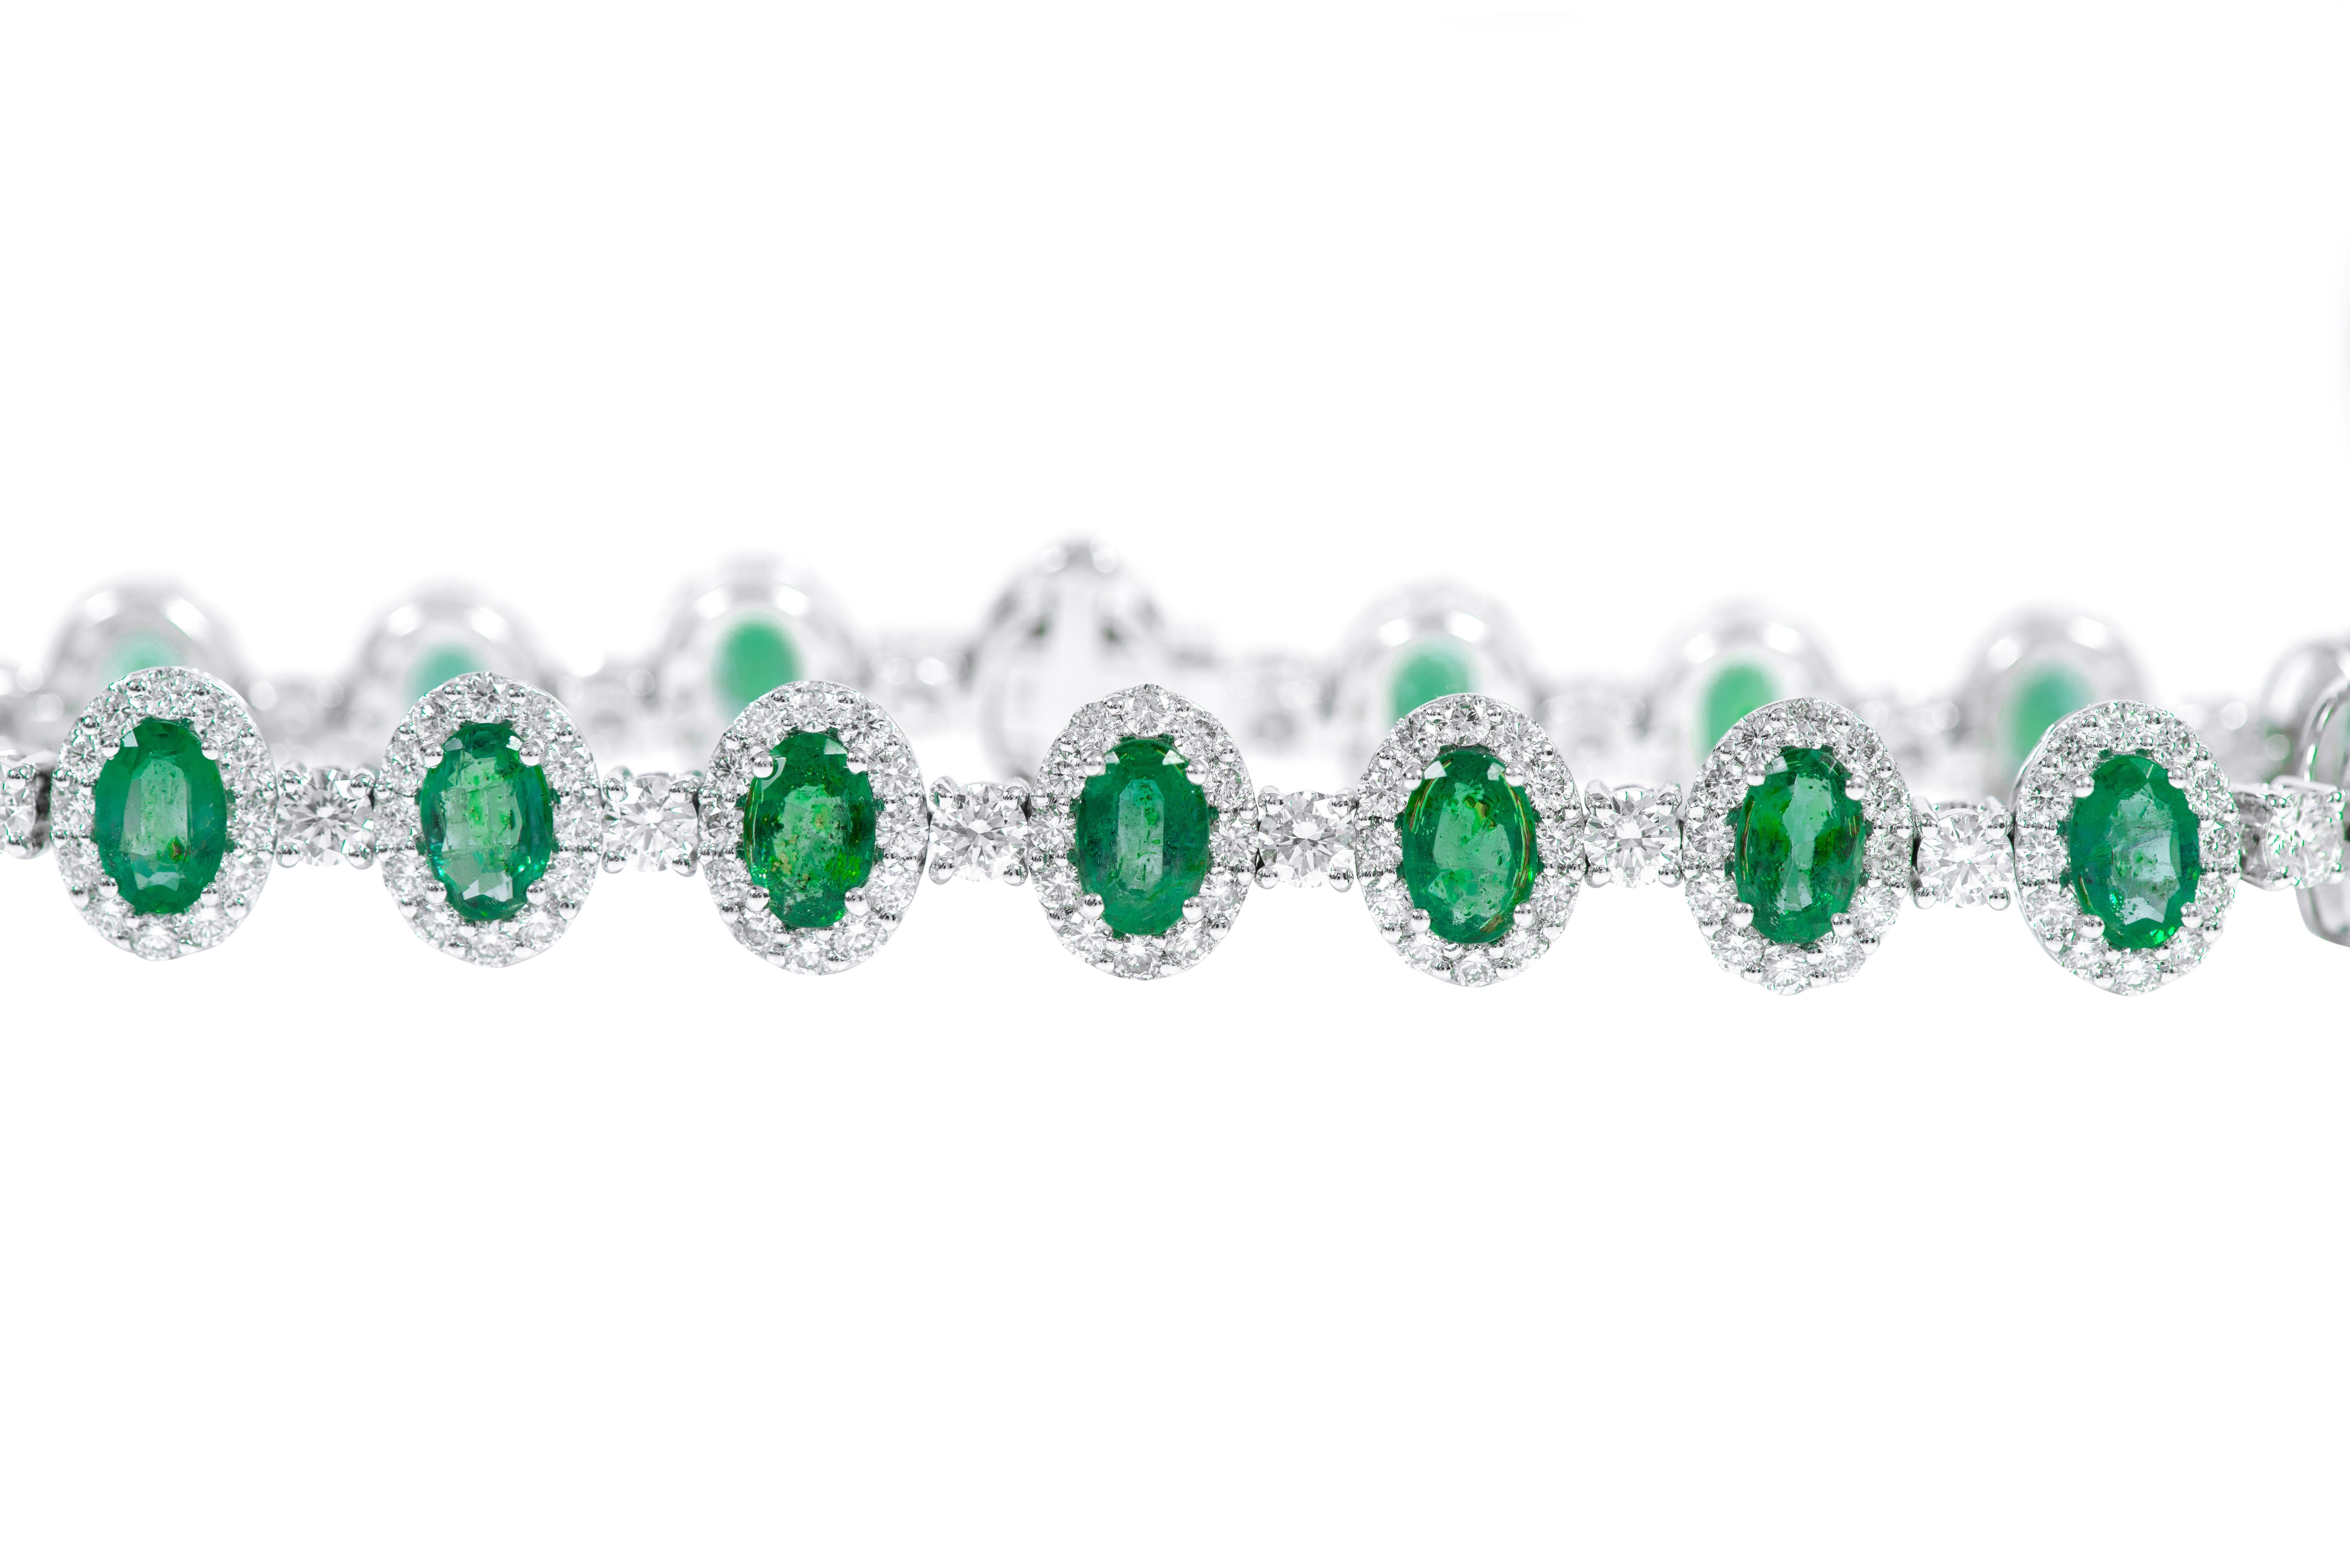 bracelet moderne en or blanc 18 carats avec émeraude naturelle de 7,07 carats et grappe de diamants

Cet impressionnant bracelet tennis en émeraude vert vibrant et diamants est remarquablement brillant. Les émeraudes ovales solitaires sont